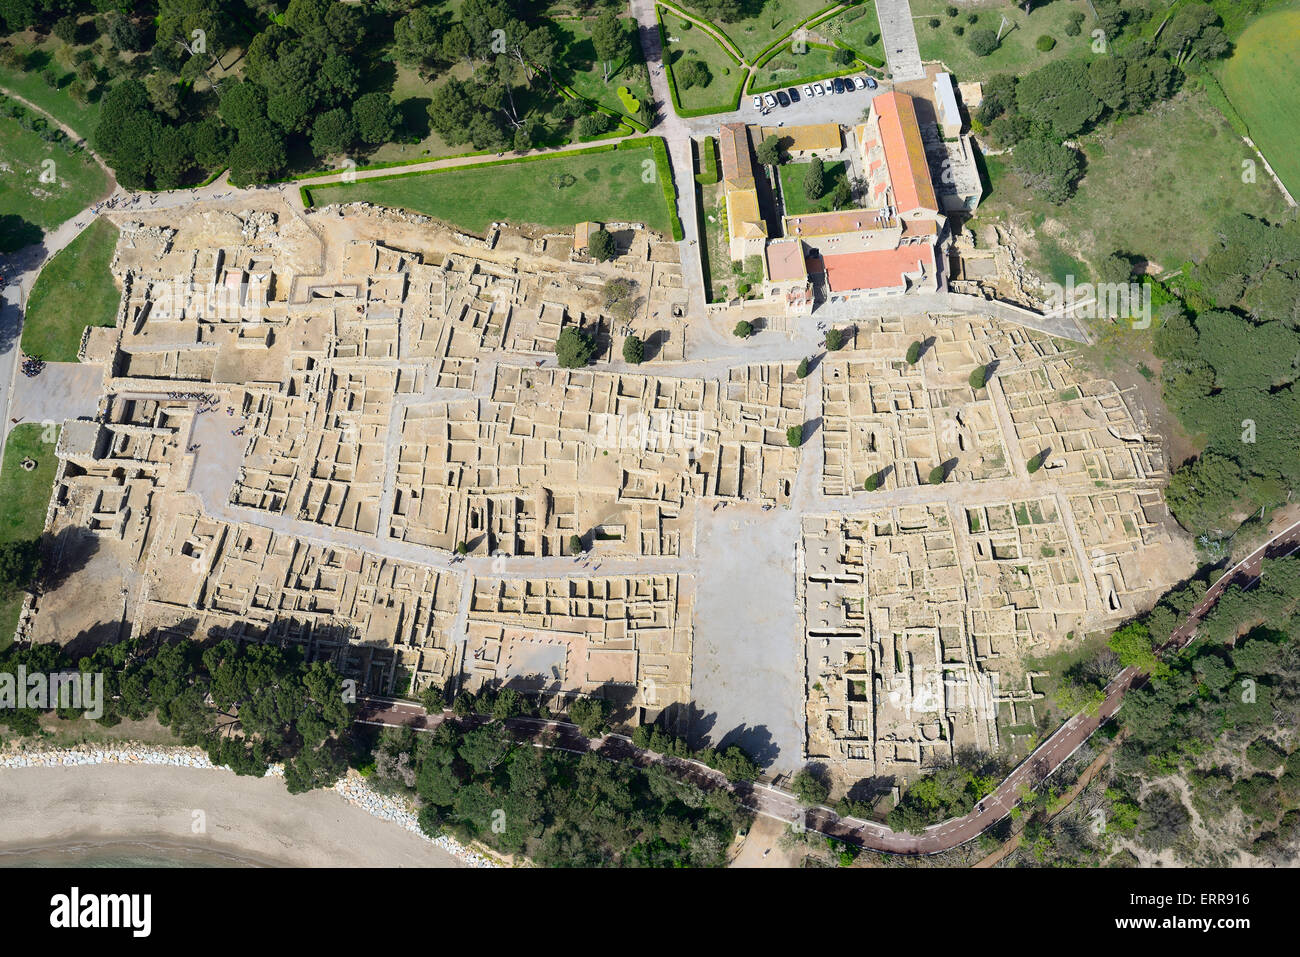 VUE AÉRIENNE.Ruines d'une ancienne ville grecque sur la côte catalane.Empúries, l'Escala, Costa Brava, province de Gérone, Catalogne,Espagne. Banque D'Images